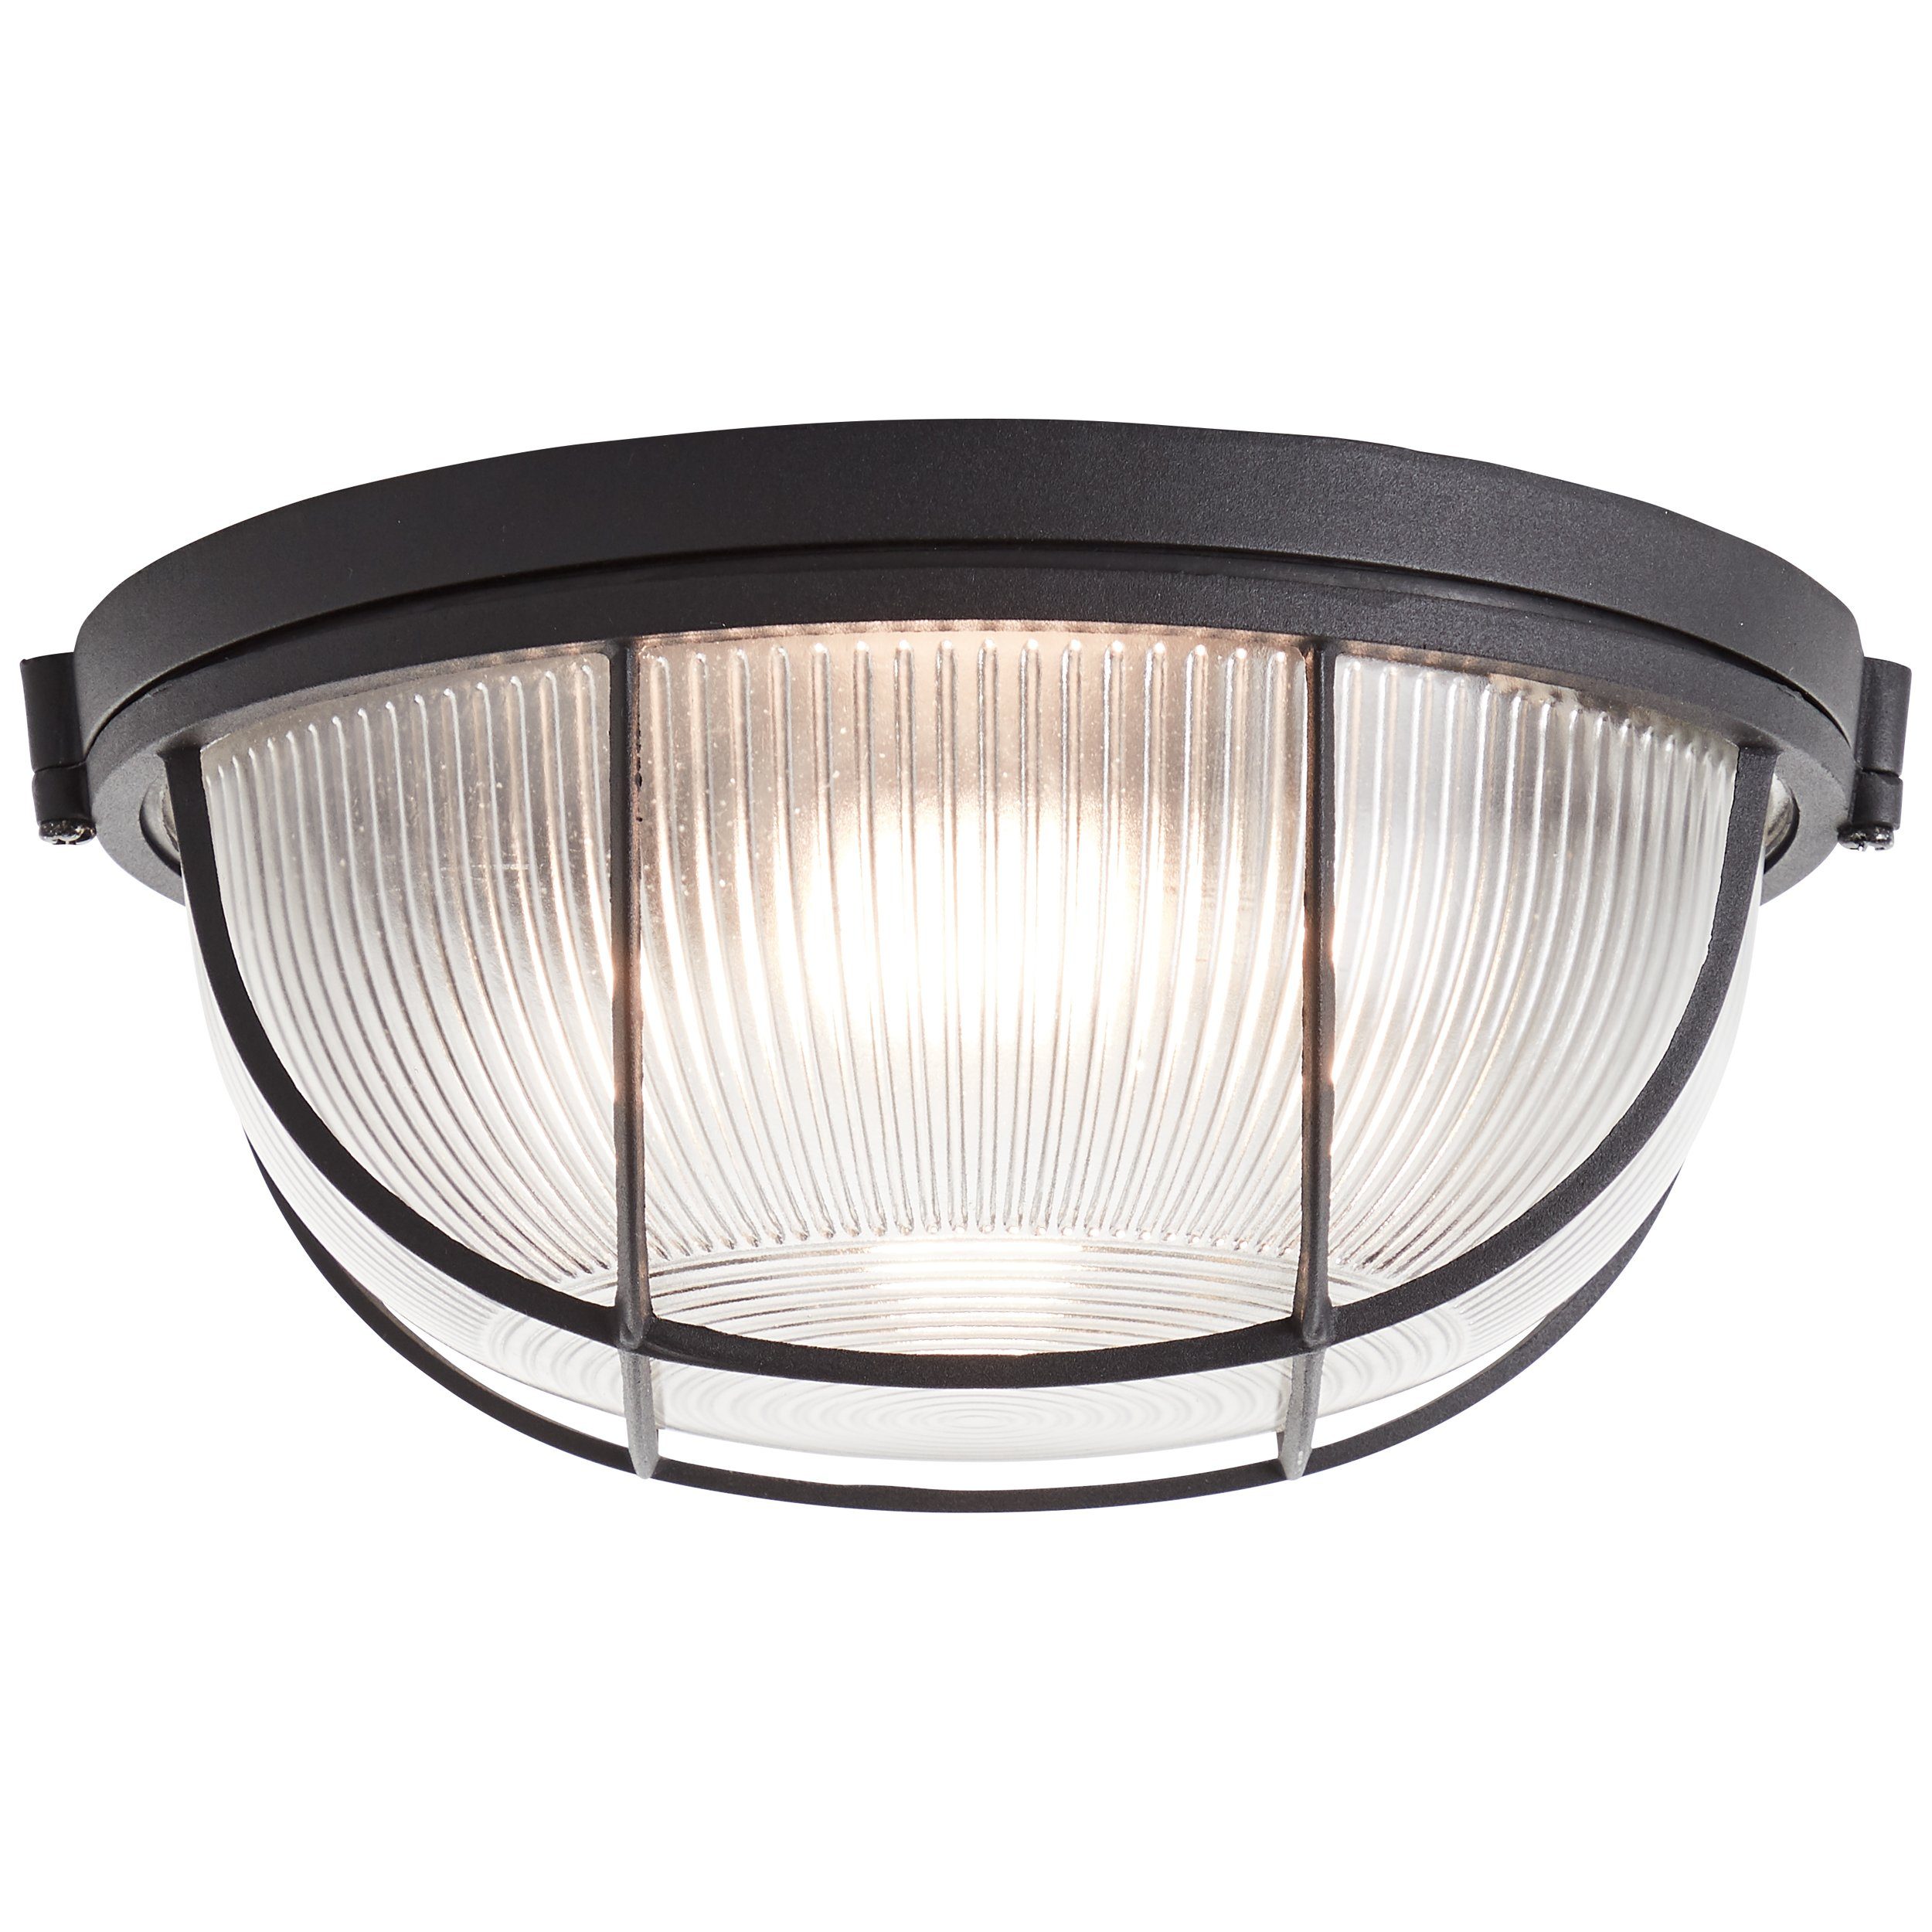 Lightbox Deckenleuchte, ohne Leuchtmittel, Wand- & Deckenlampe, 11 cm Höhe,  Ø 26 cm, E27, max. 40 W, Metall/Glas